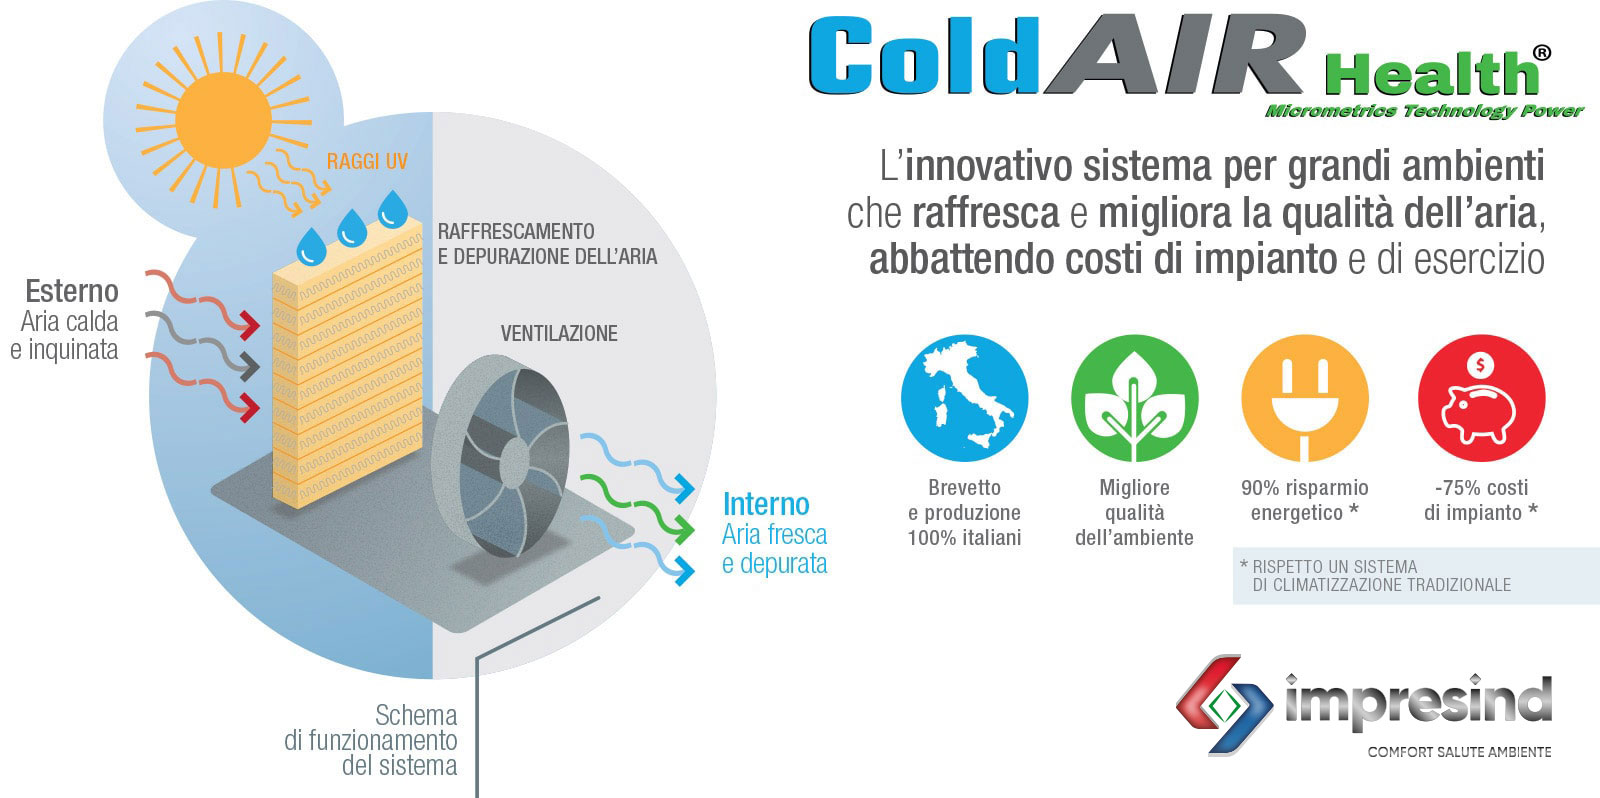 Il migliore sistema per raffrescare e migliorare la qualità dell'aria nei grandi impianti industriali